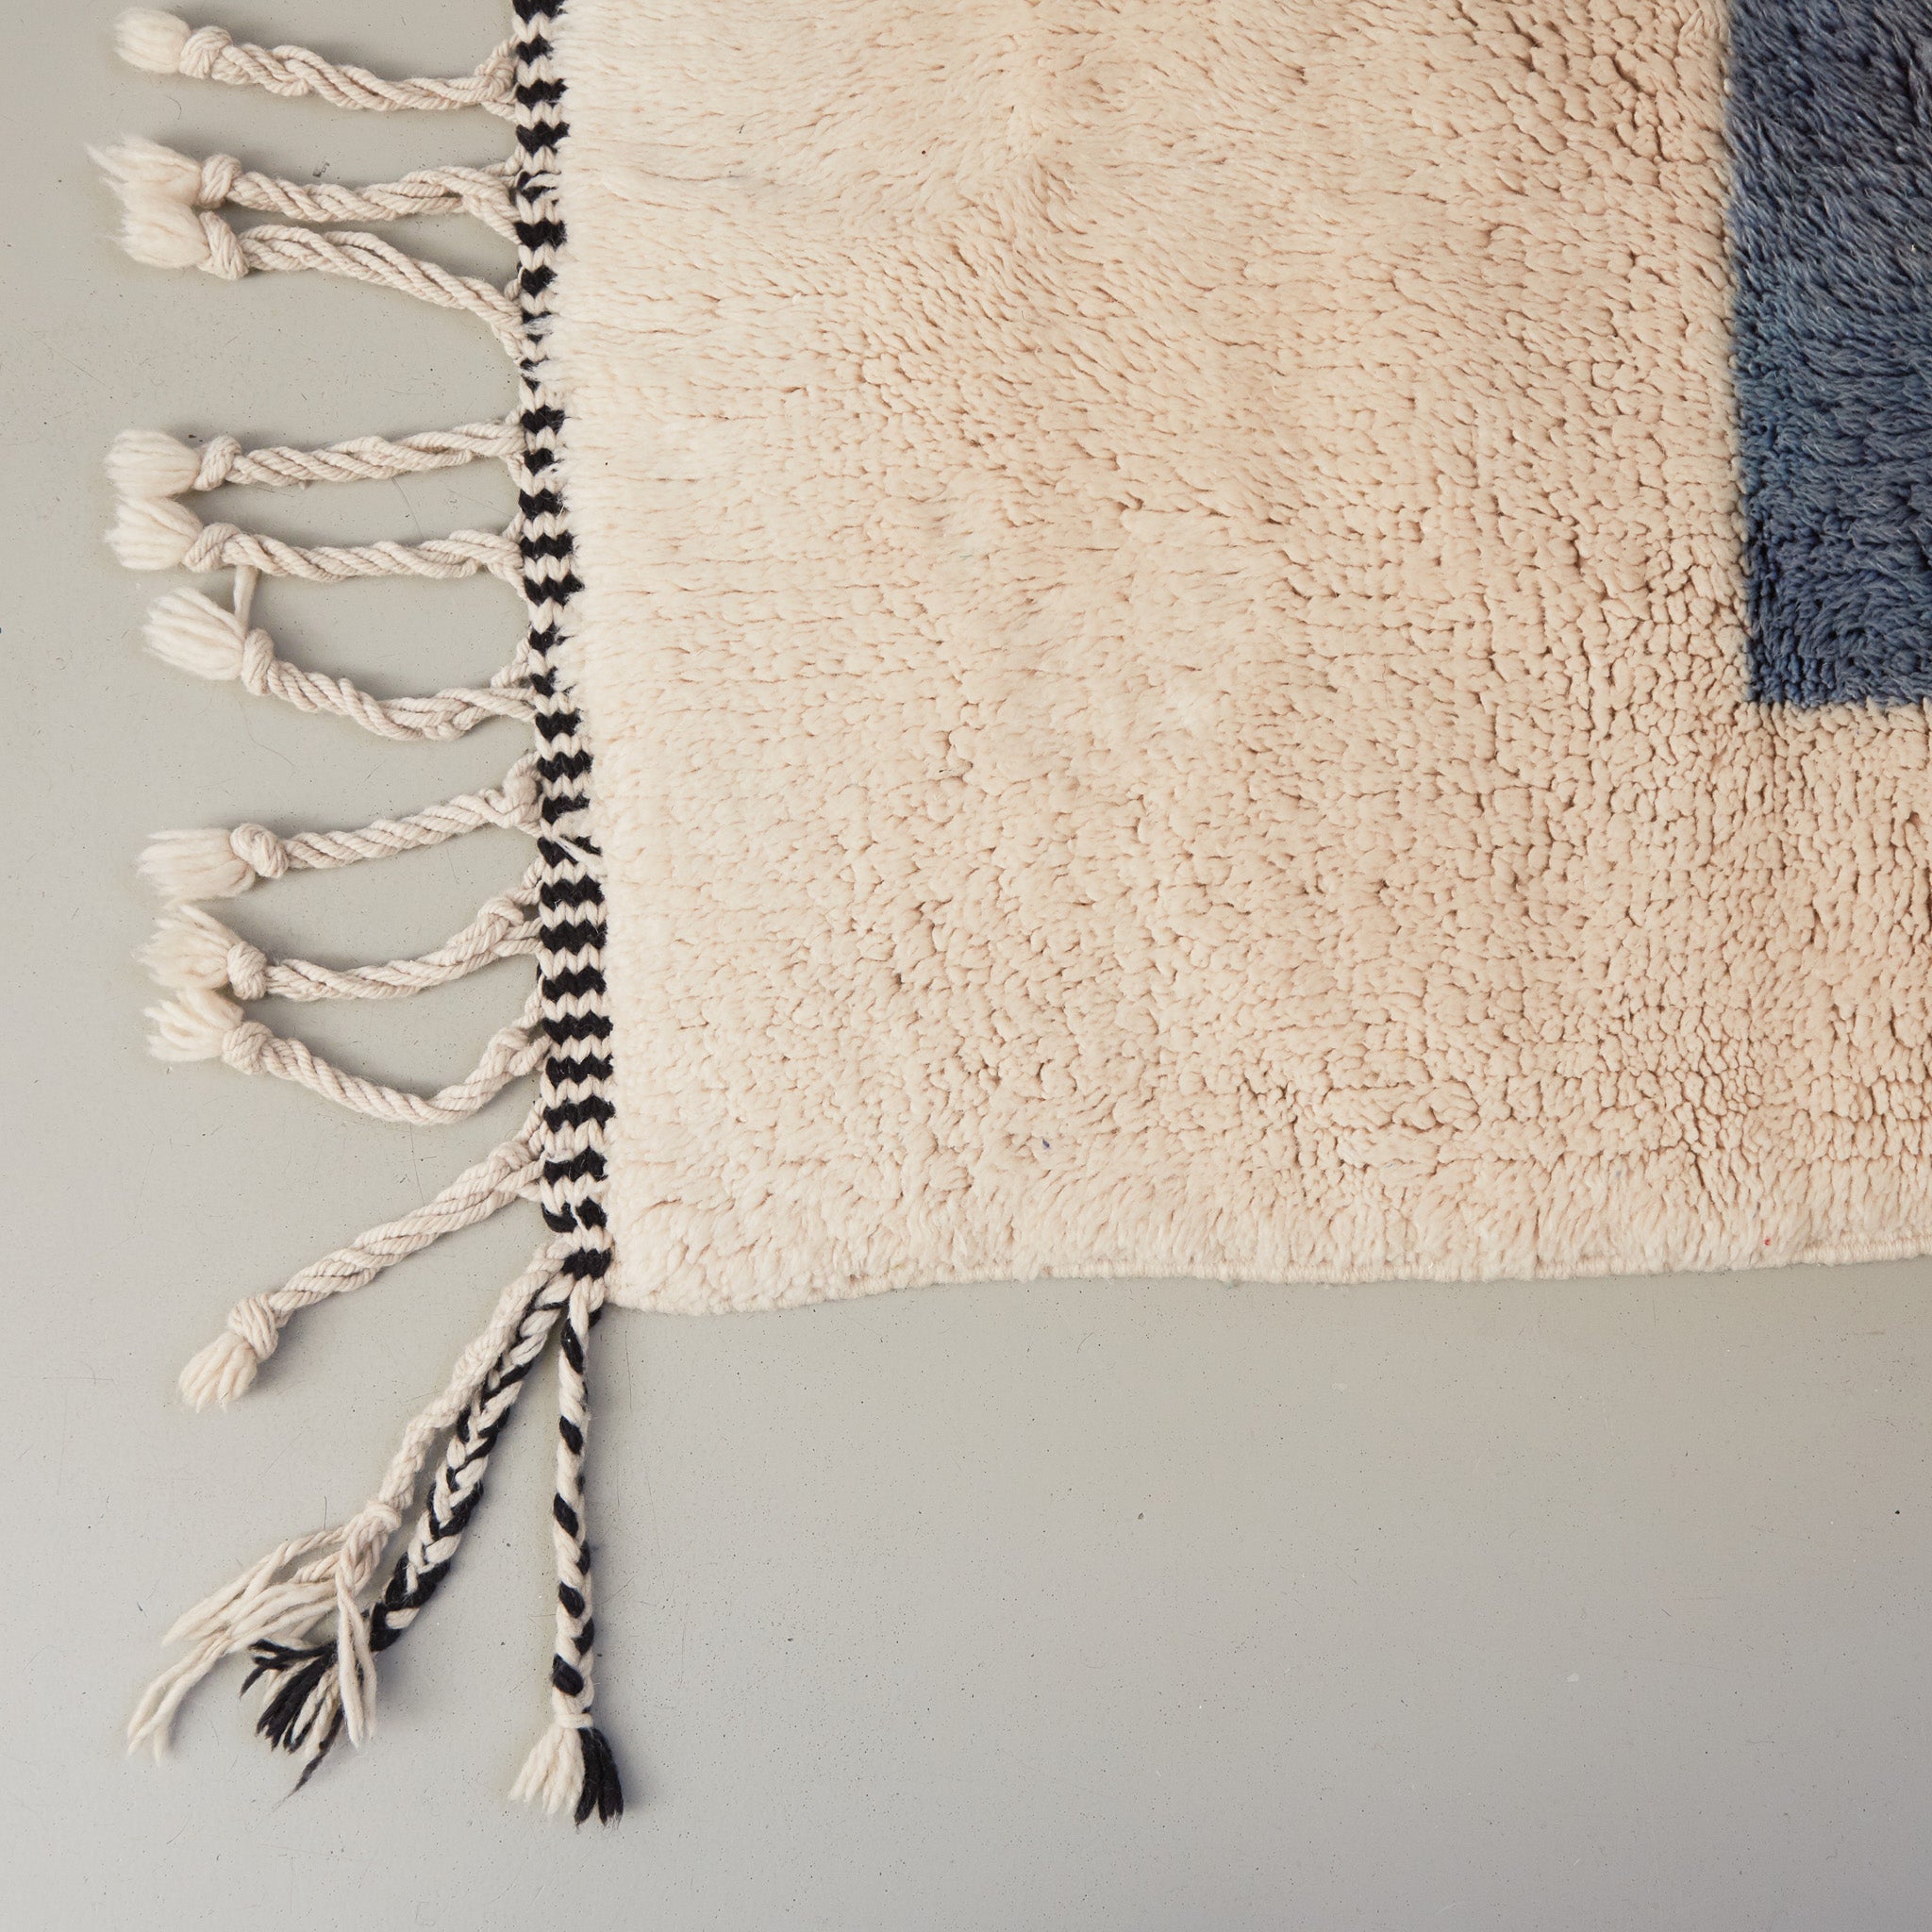 dettaglio della frangia bianca e nera e della lana bianca e azzurra di un tappeto beni mrirt